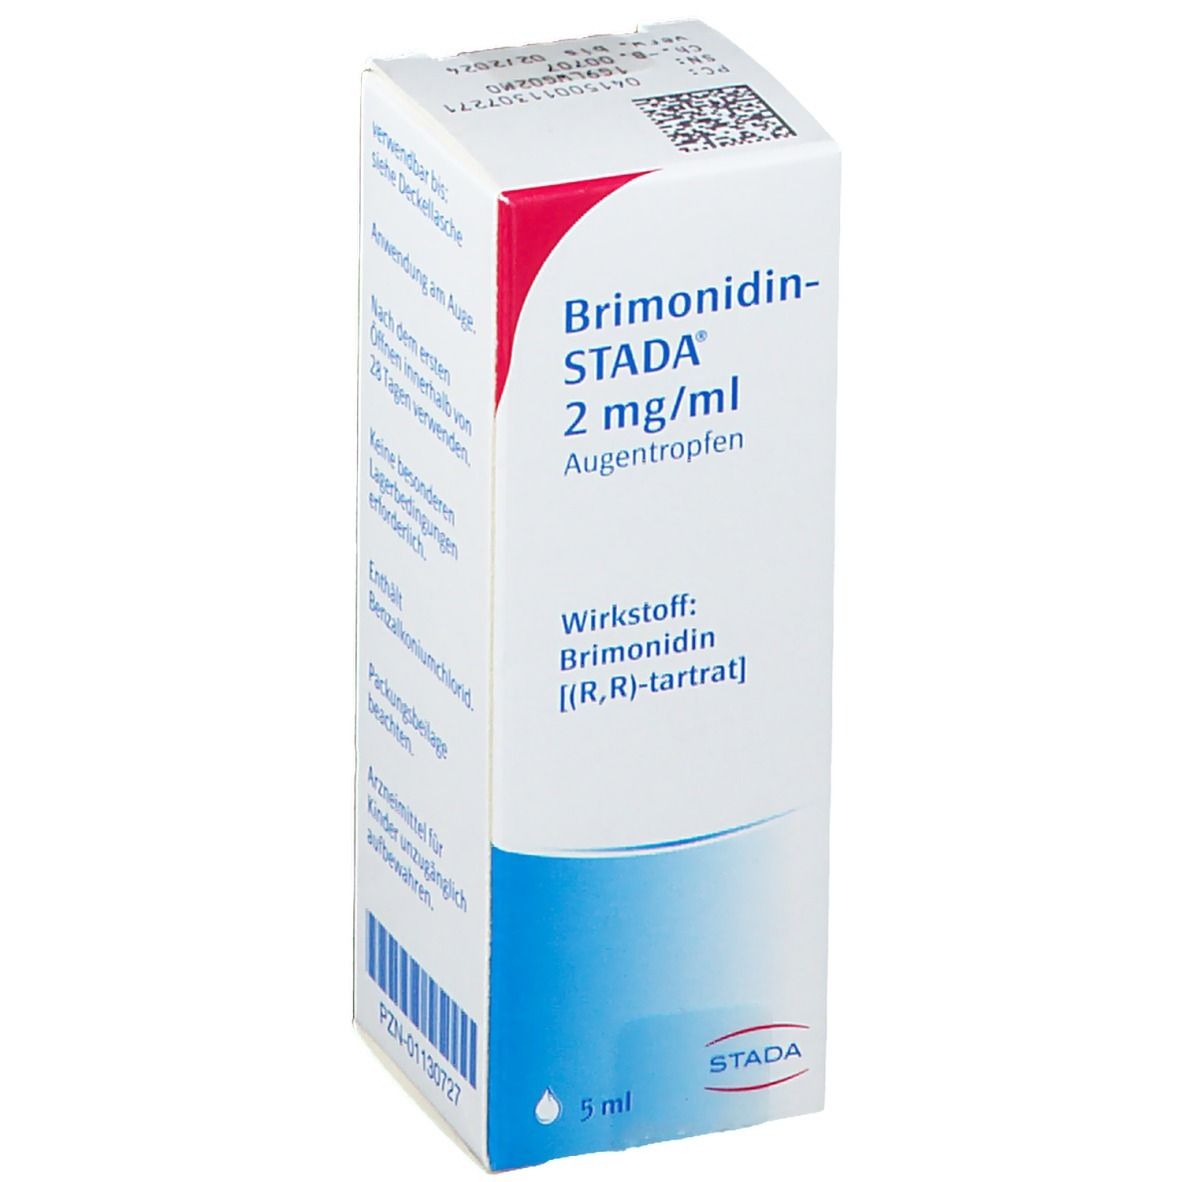 Brimonidin-STADA® 2 mg/ml Augentropfen